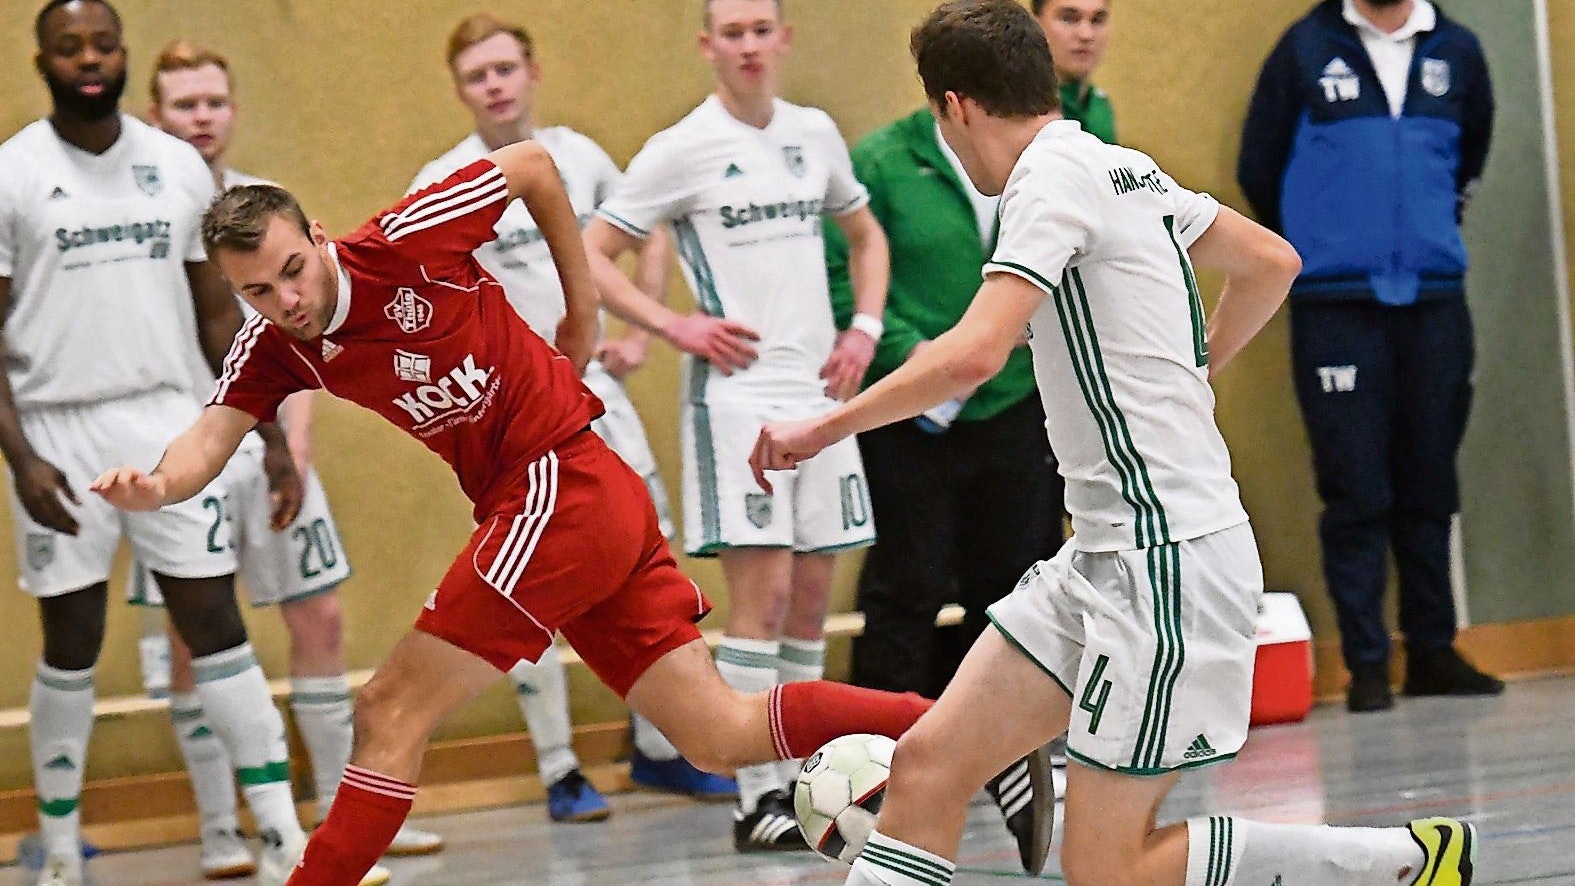 Umkämpft: Die Mannschaften von Gastgeber Hansa Friesoythe (weiße Trikota) und dem SV Thüle wollen auch dieses Jahr wieder um den Titel mitspielen. Foto: Wulfers